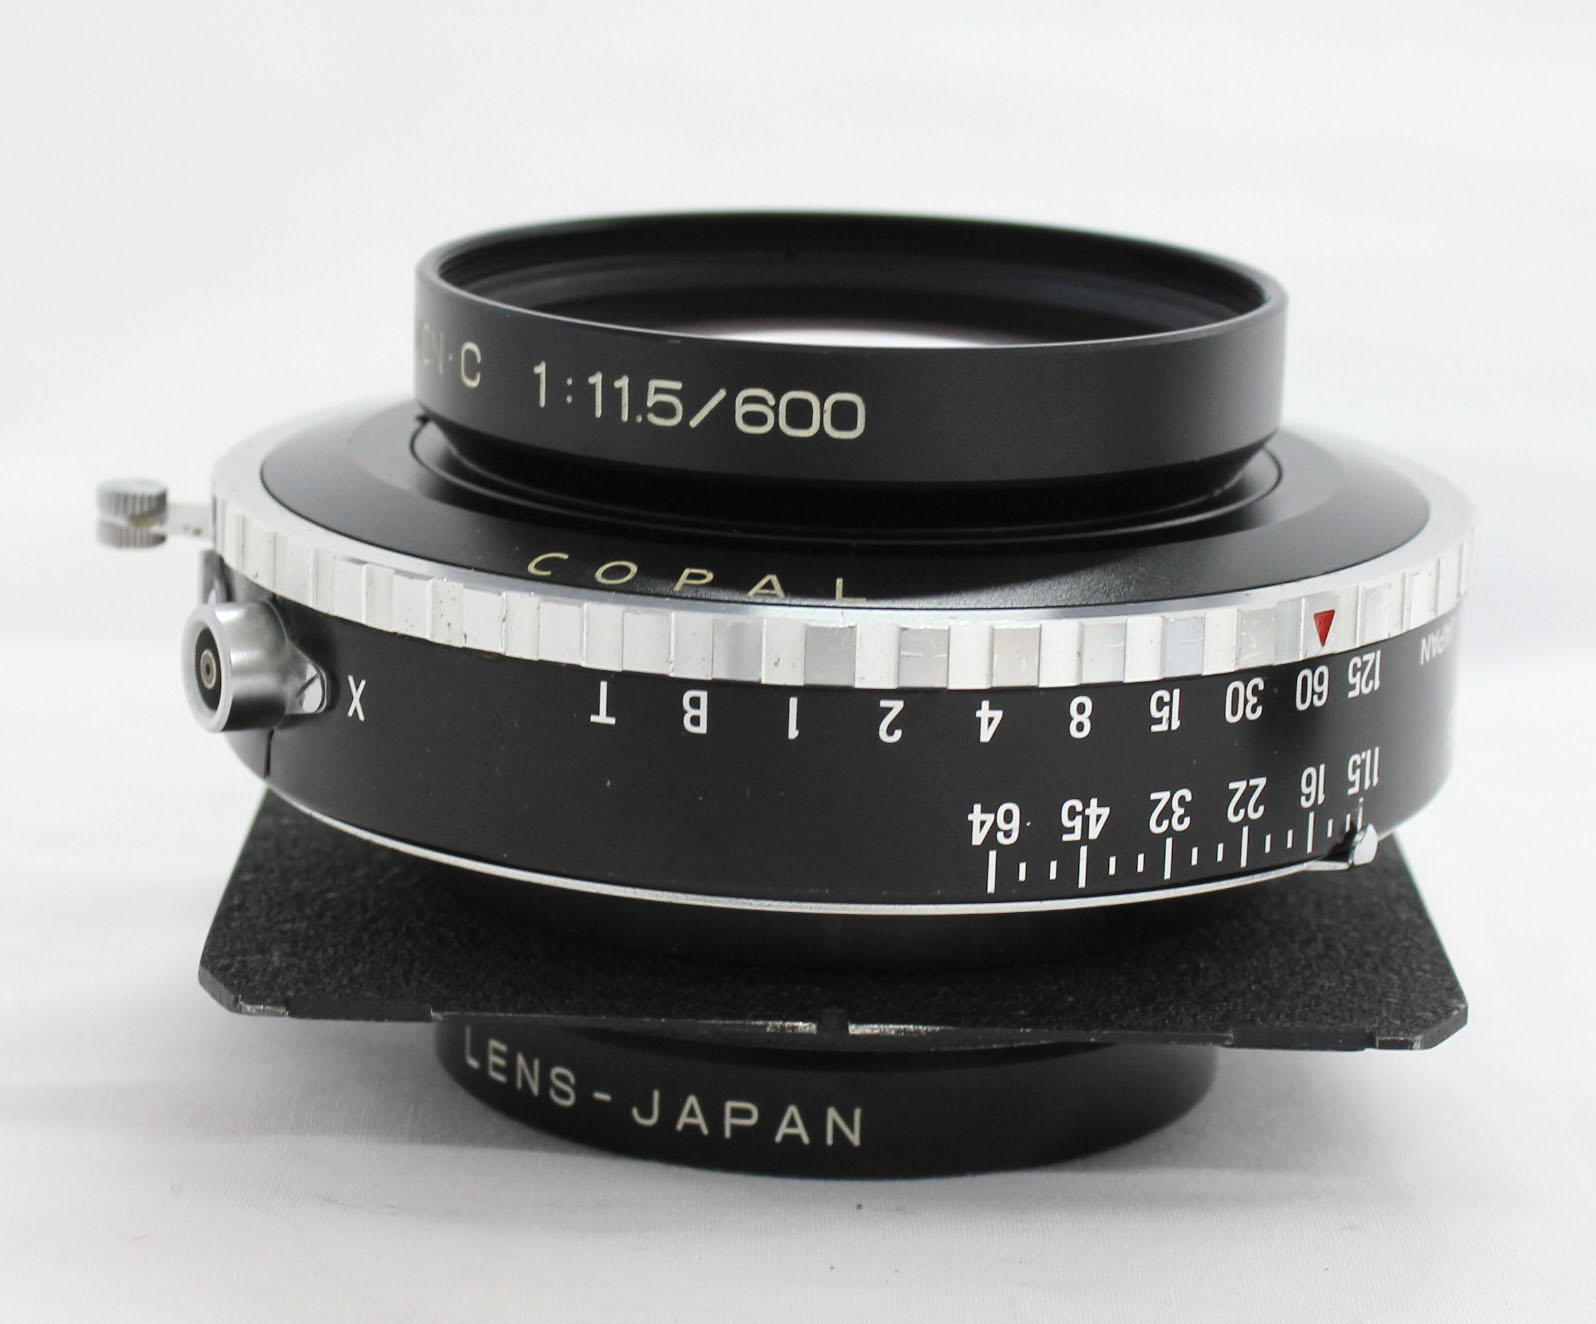  Fuji Fujinon C 600mm F/11.5 4x5 8x10 Large Format Lens Copal No.3 Shutter from Japan Photo 6